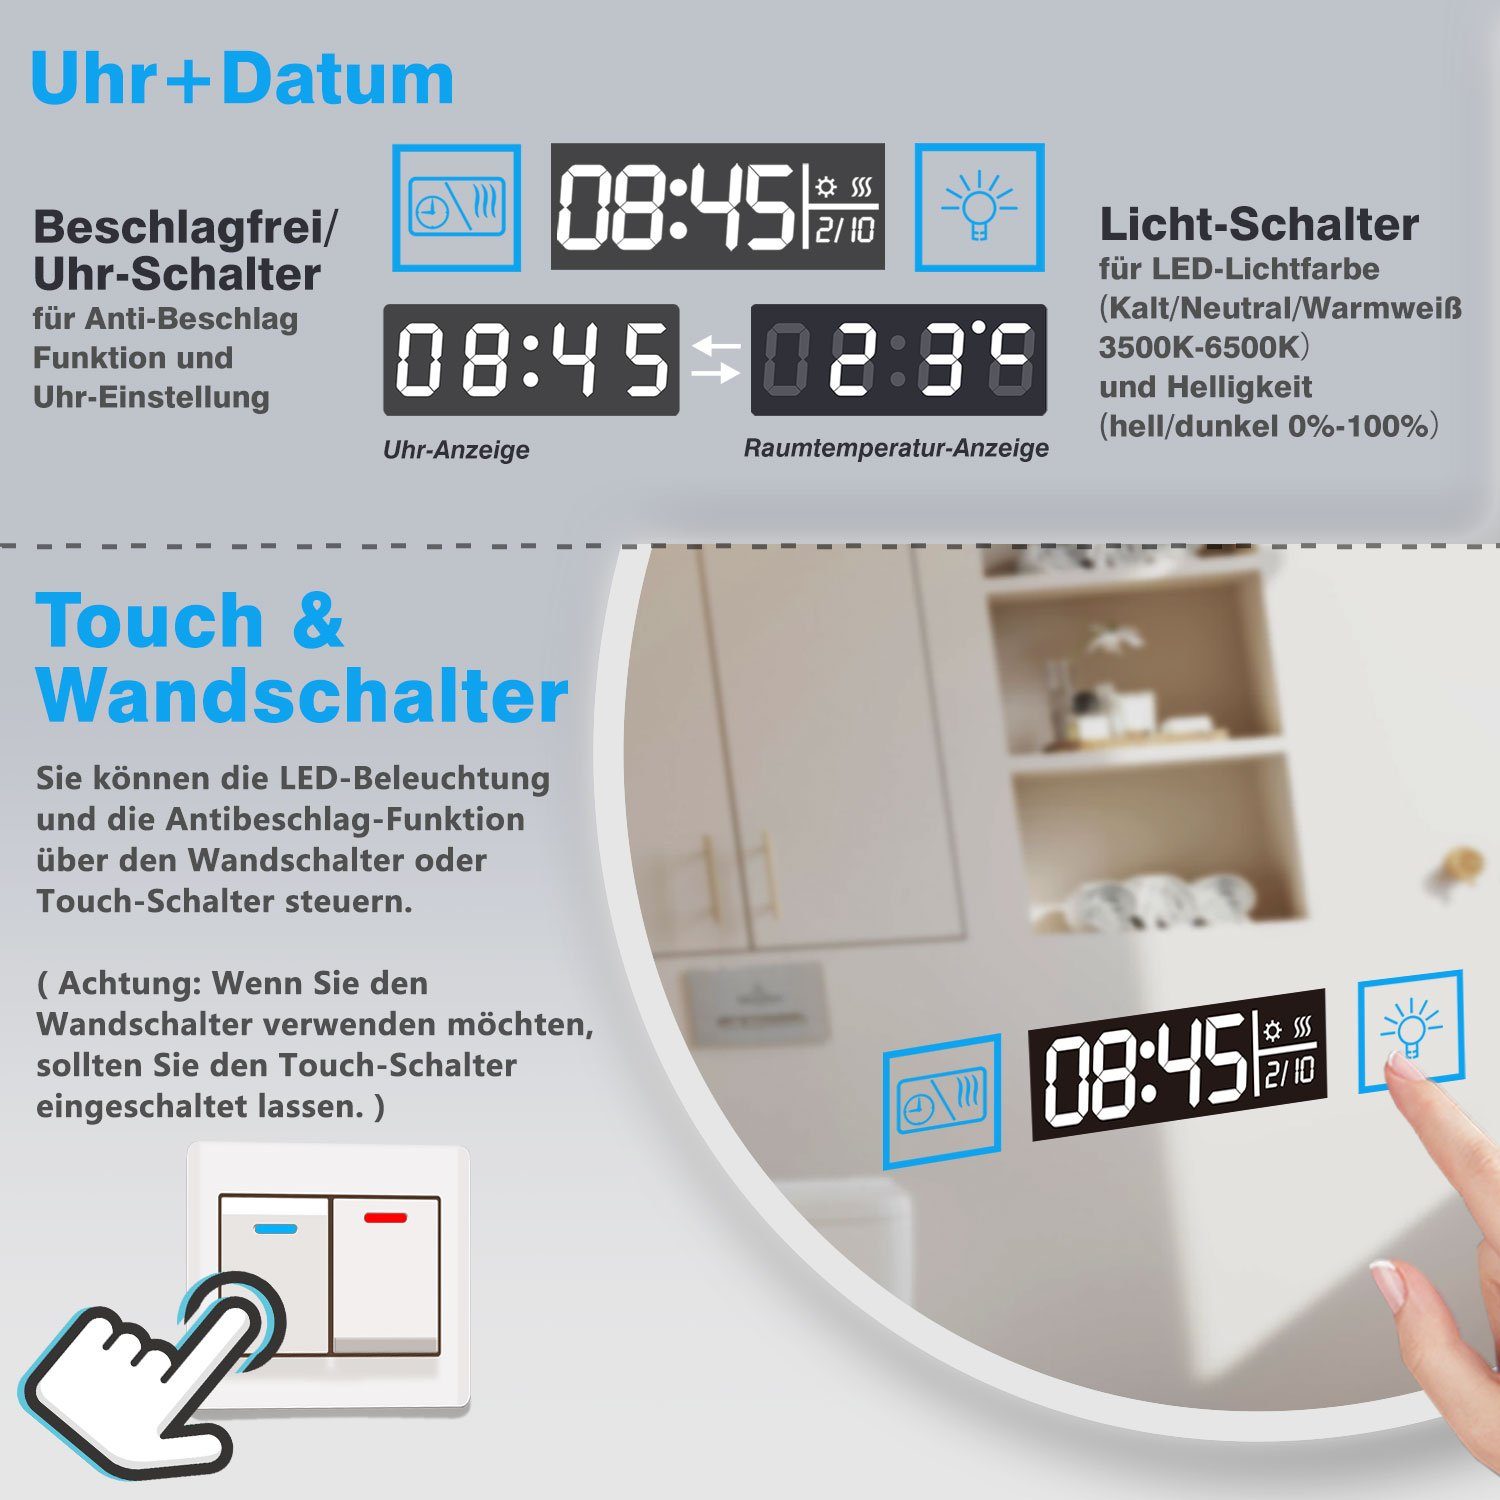 dimmbar Schminkspiegel Badspiegel Uhr, duschspa Memory Touch/Wandschalter, Runder Kalt/Neutral/Warmweiß Spiegel